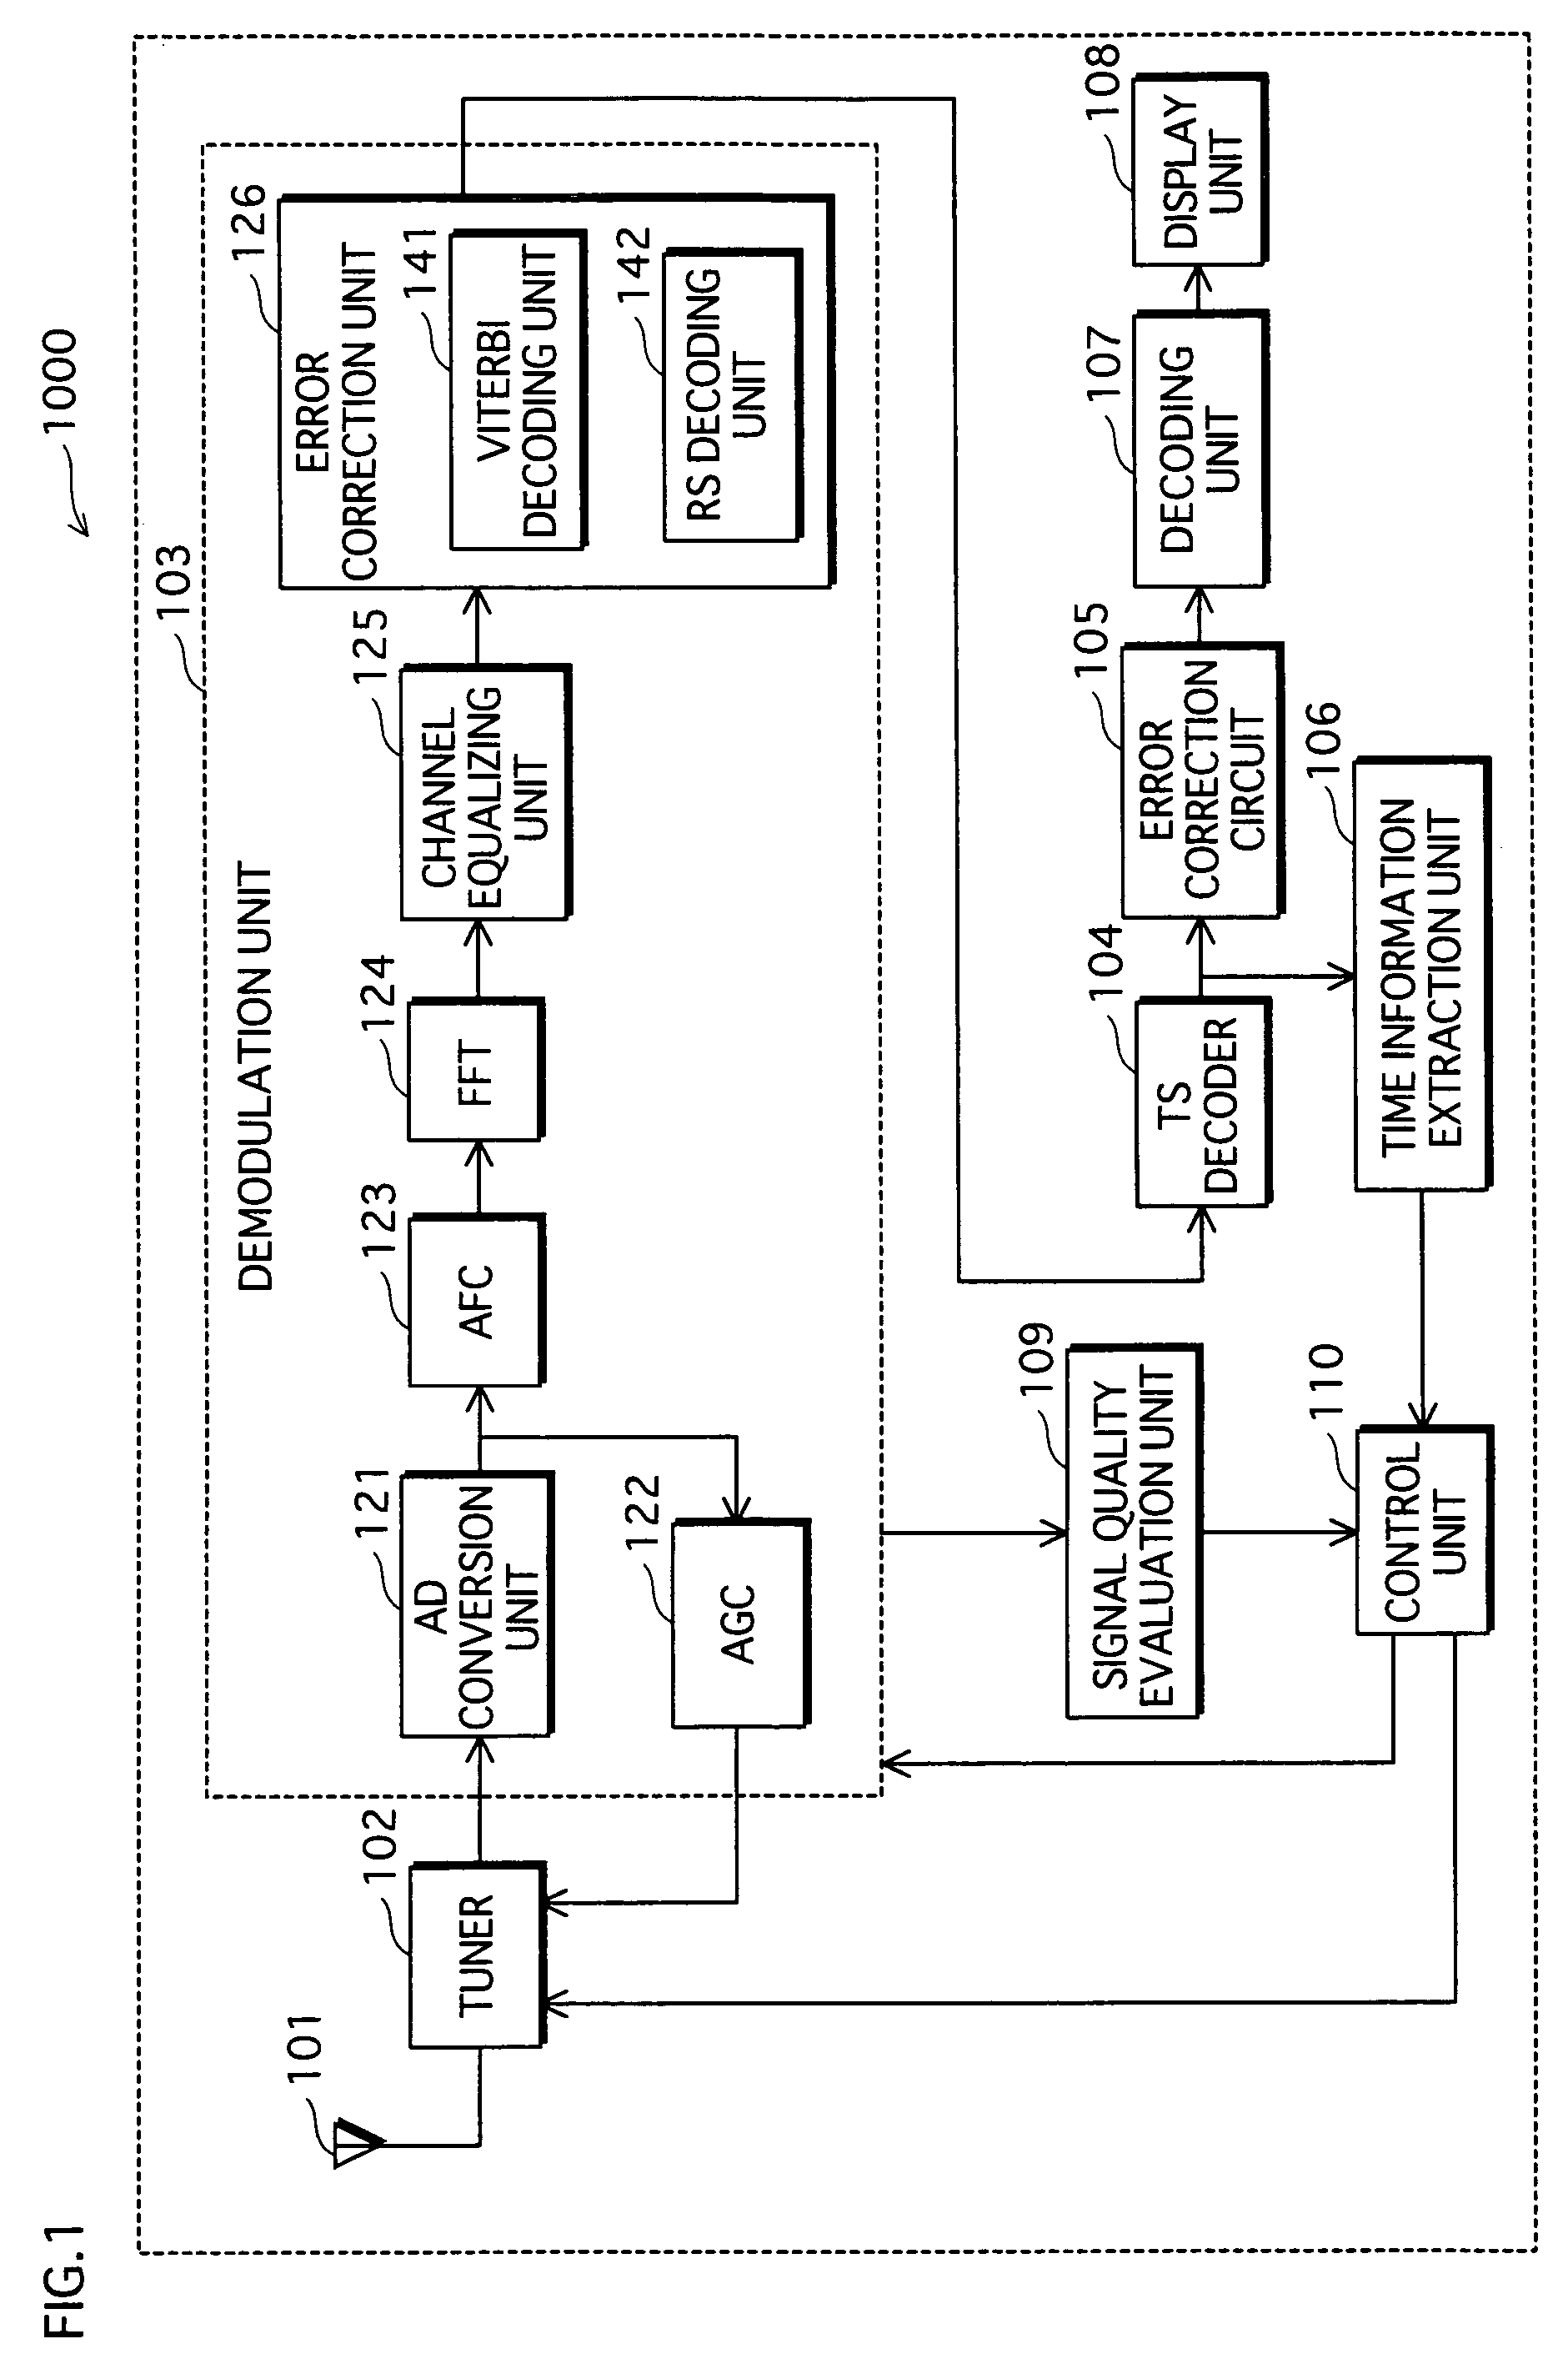 Time division multiplexed signal receiver apparatus